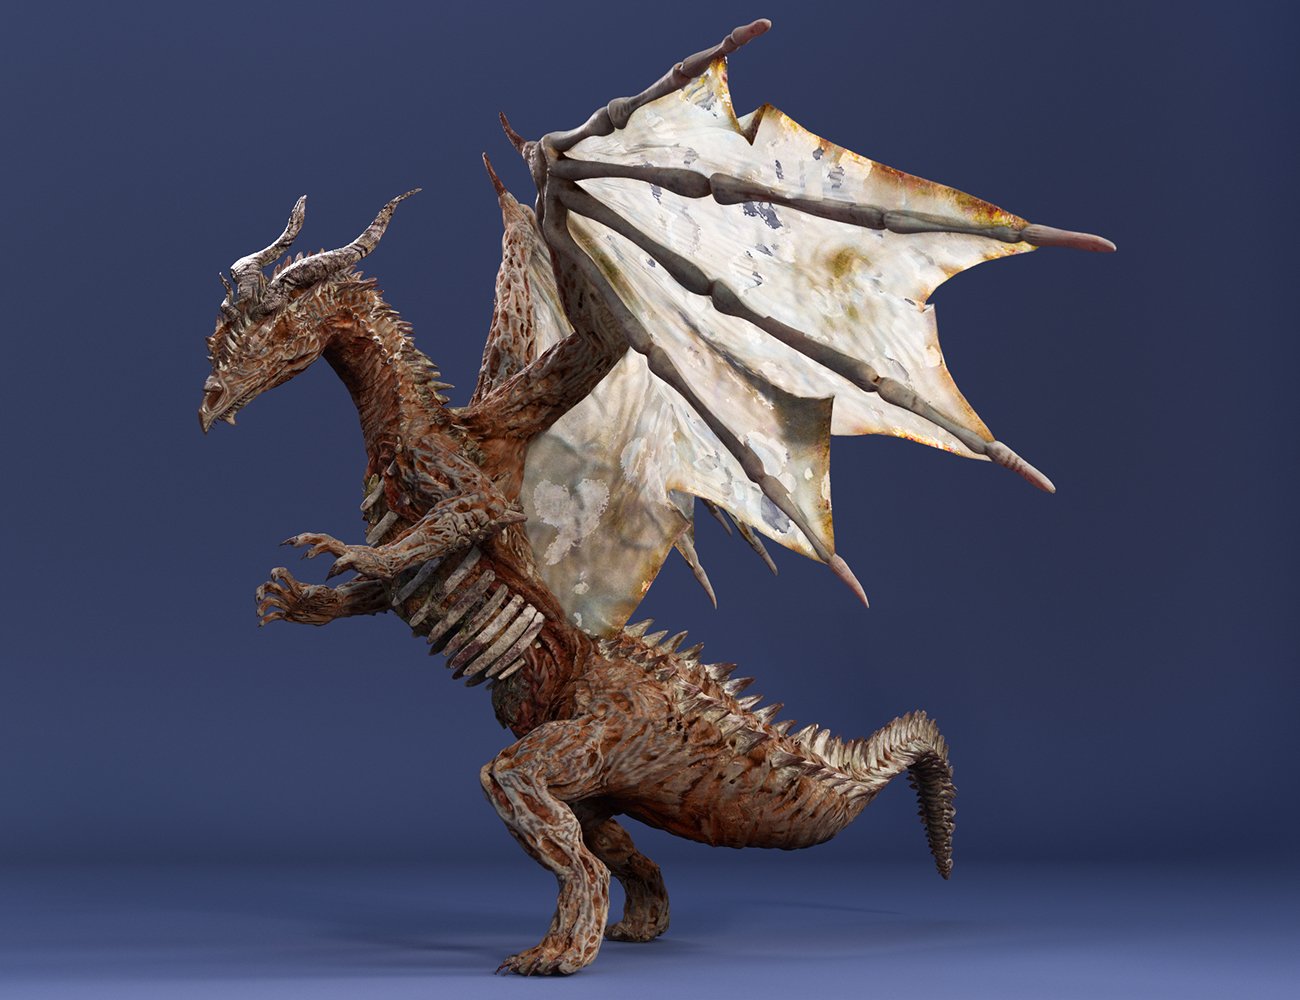 Lich Dragon Carnufex HD for Genesis 8.1 Male by: JoeQuick, 3D Models by Daz 3D